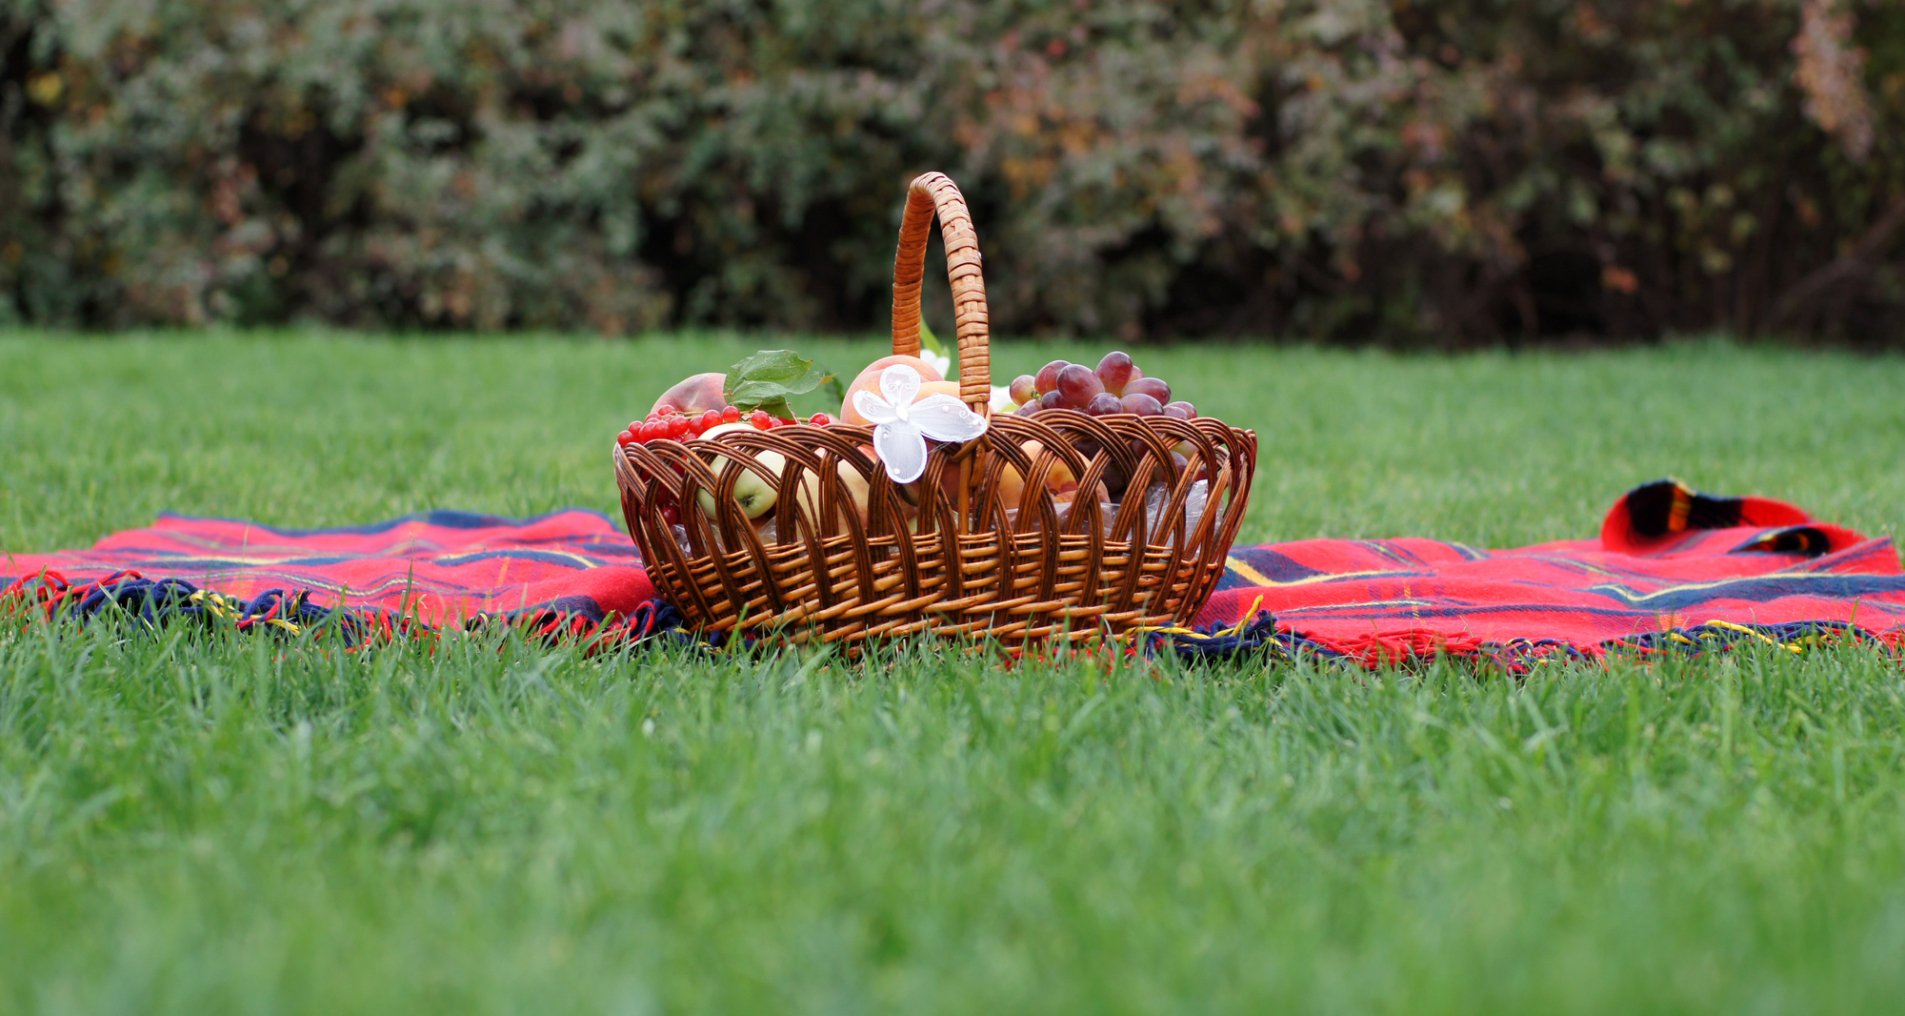 корзина для пикника на траве